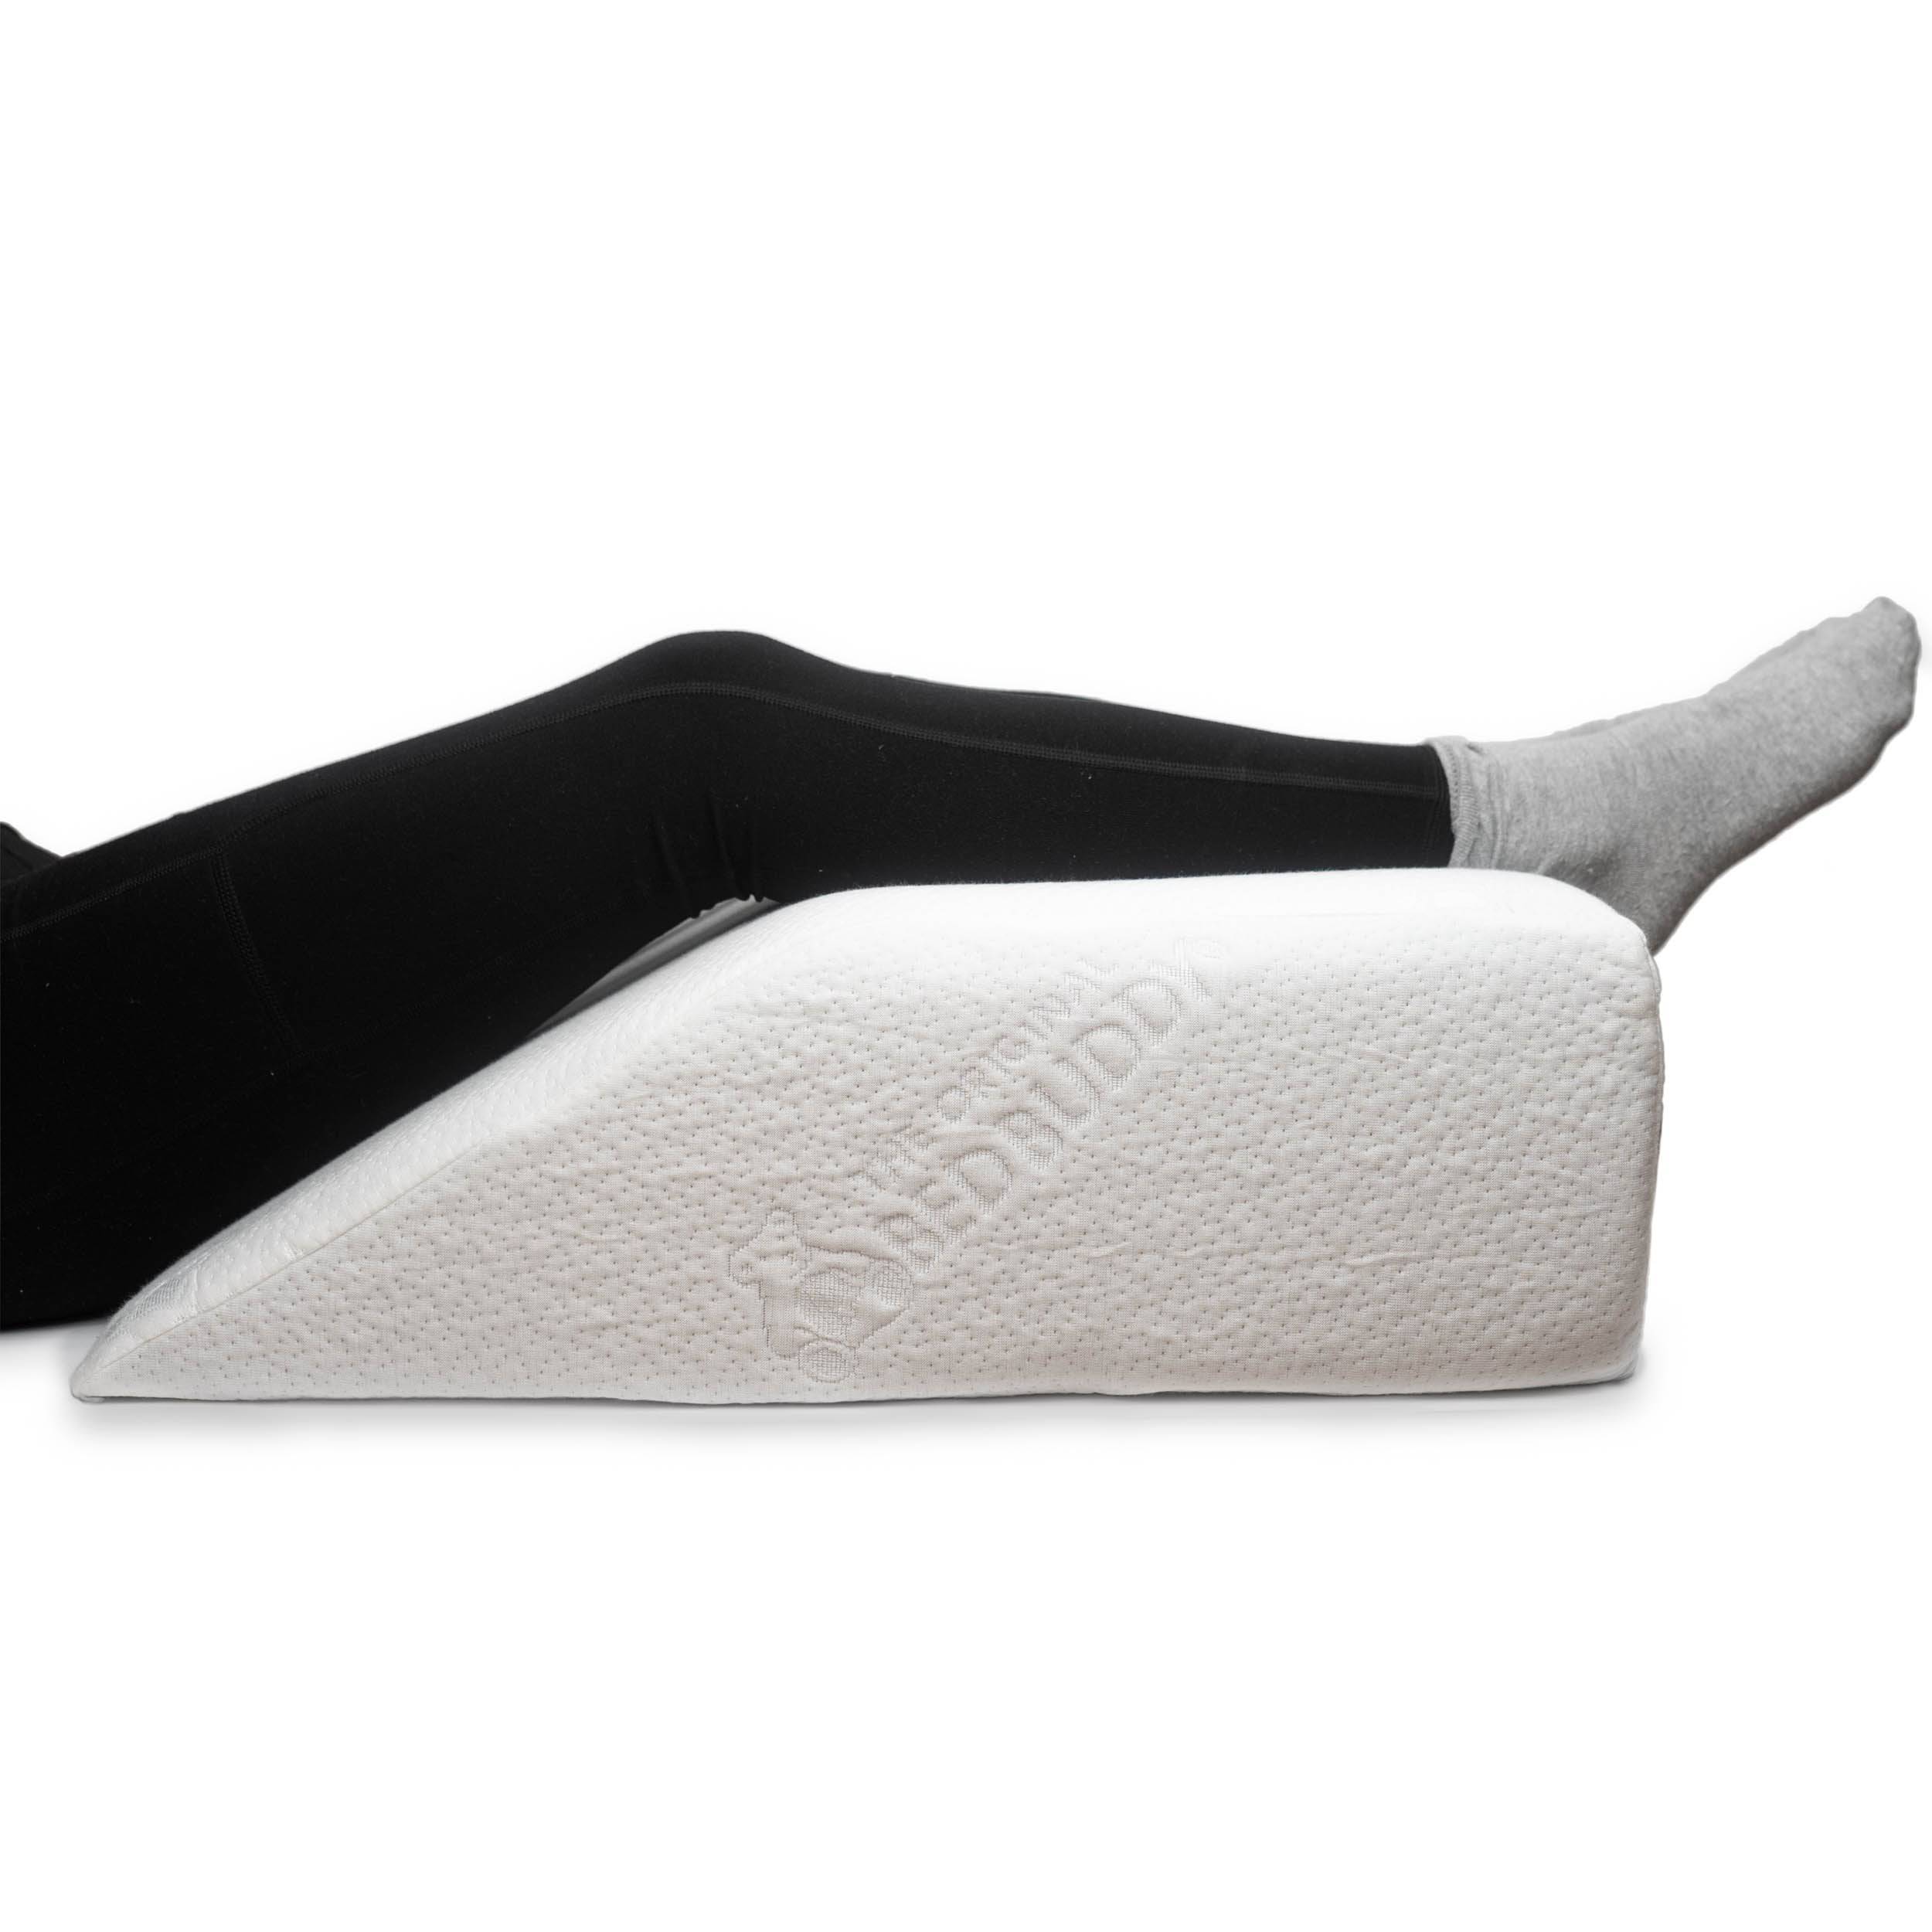 https://carex.com/cdn/shop/products/carex-health-brands-pillow-7-bed-buddy-leg-wedge-pillows-28288475988073.jpg?v=1648068299